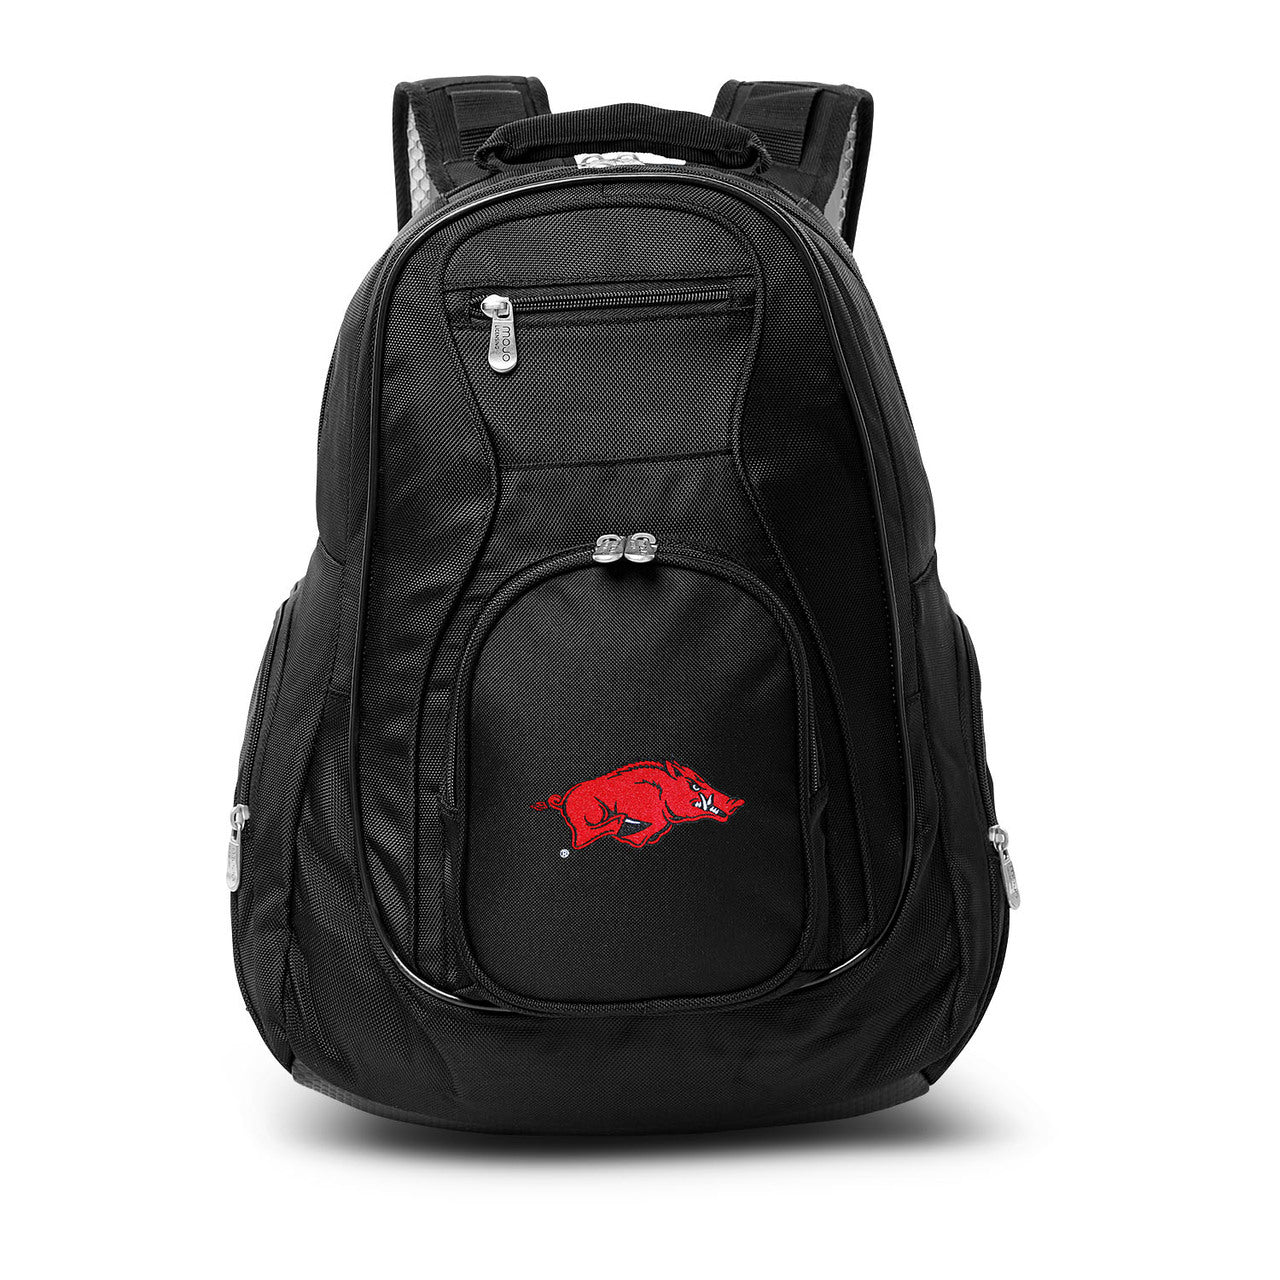 Arkansas Razorbacks Laptop Backpack in Black